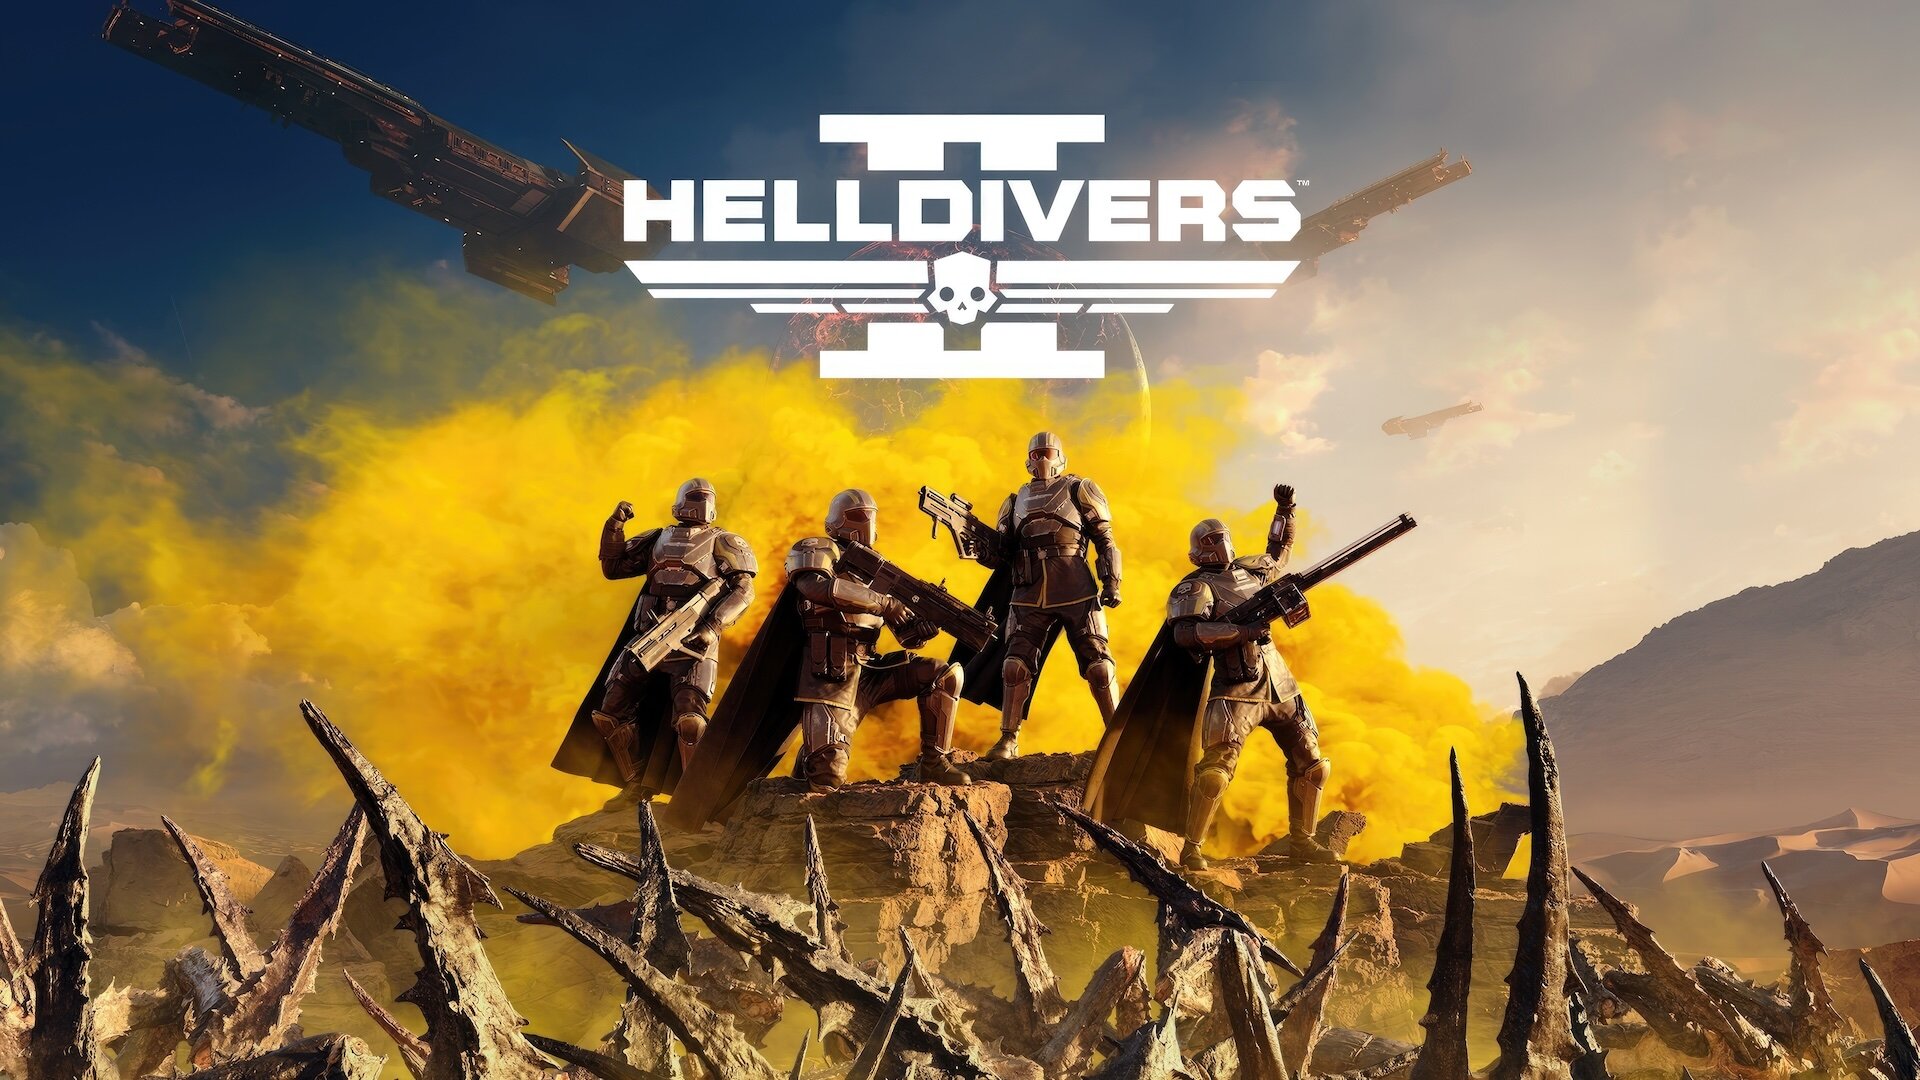 Helldivers 2 стала самой быстропродаваемой игрой Sony в истории, обойдя God of War Ragnarok